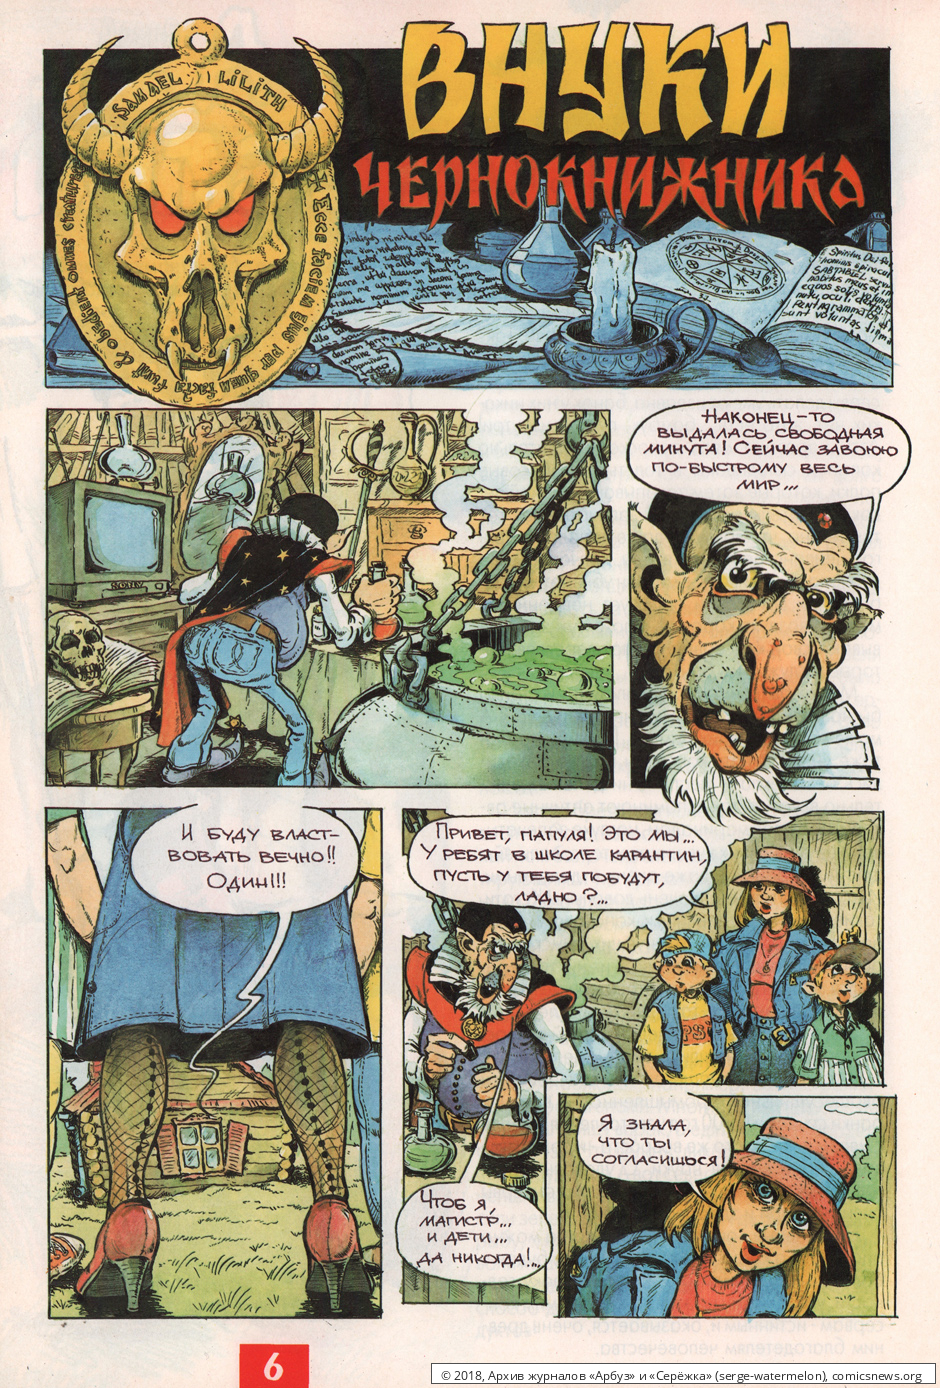 № 29 ( "Арбуз" № 3 / 1997 ) - Архив журналов «Арбуз» и «Серёжка»